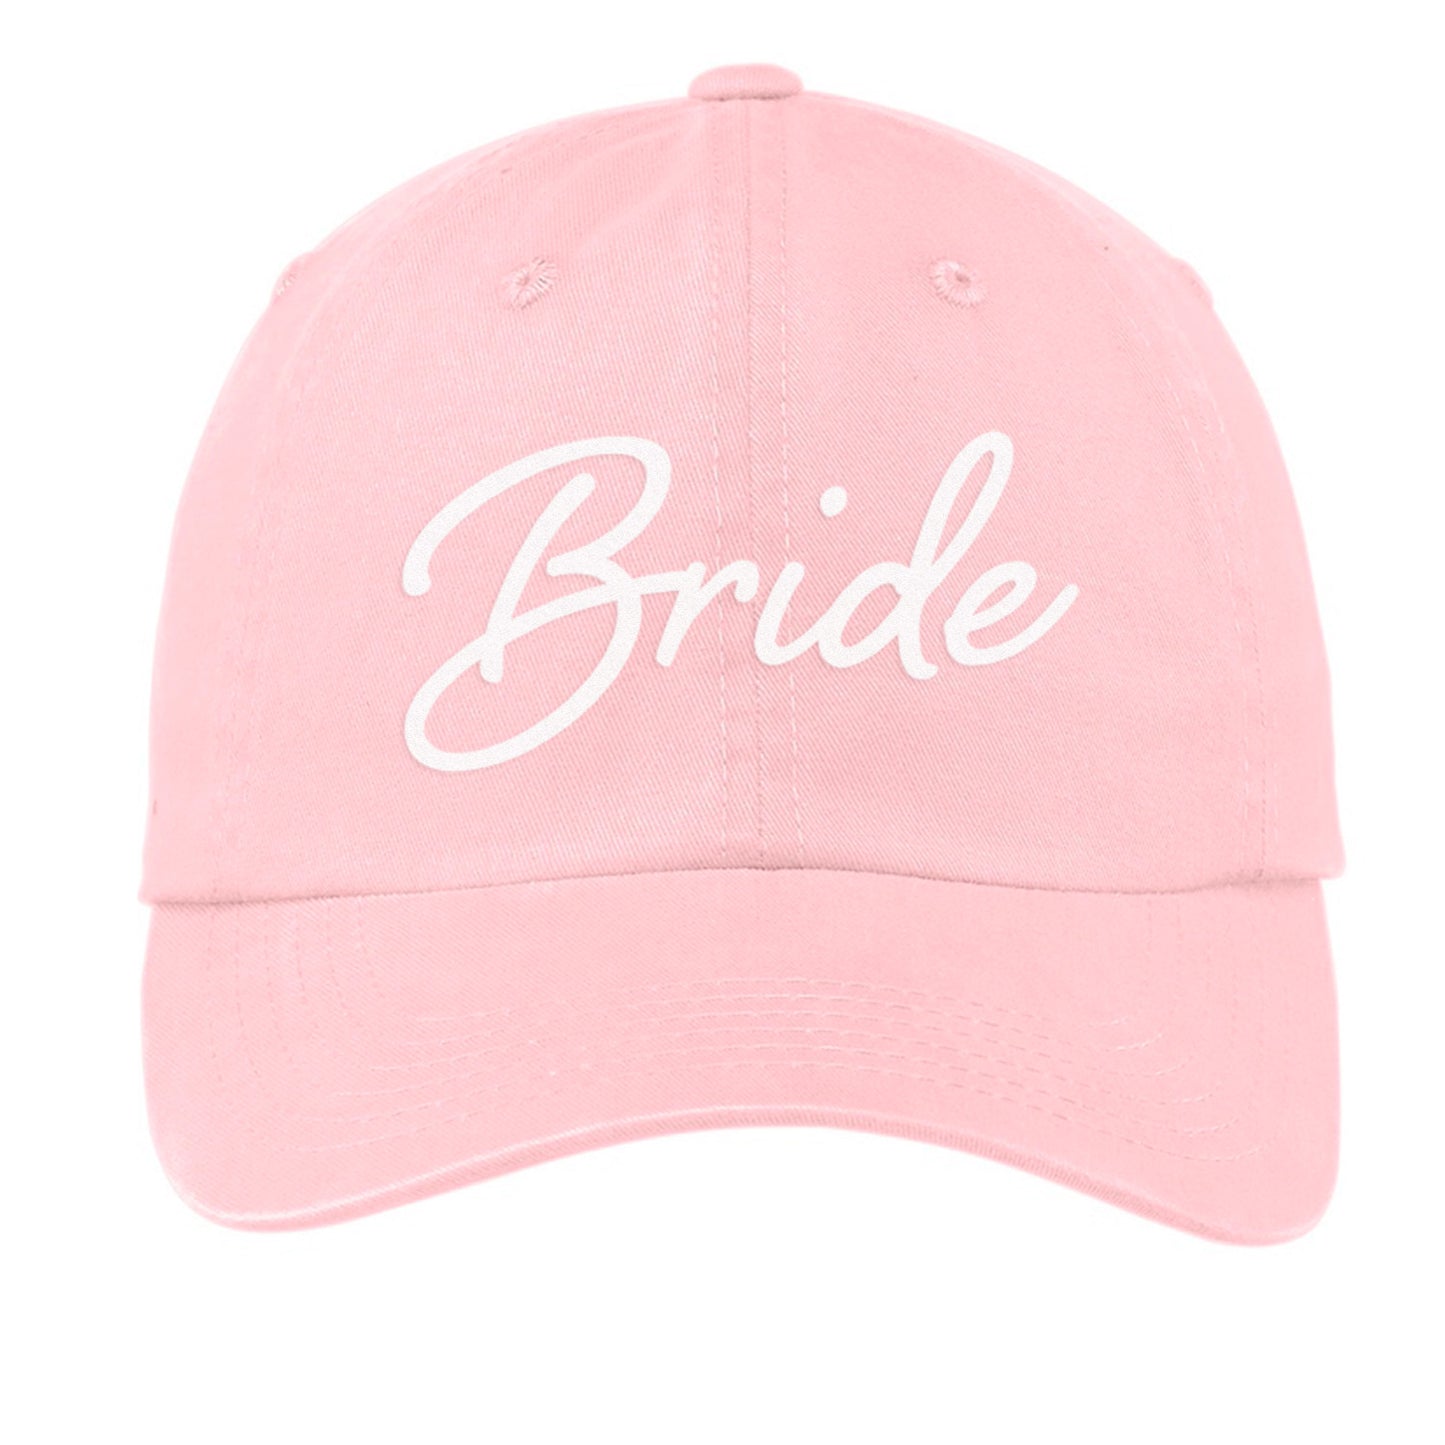 Bride Cursive Baseball Cap